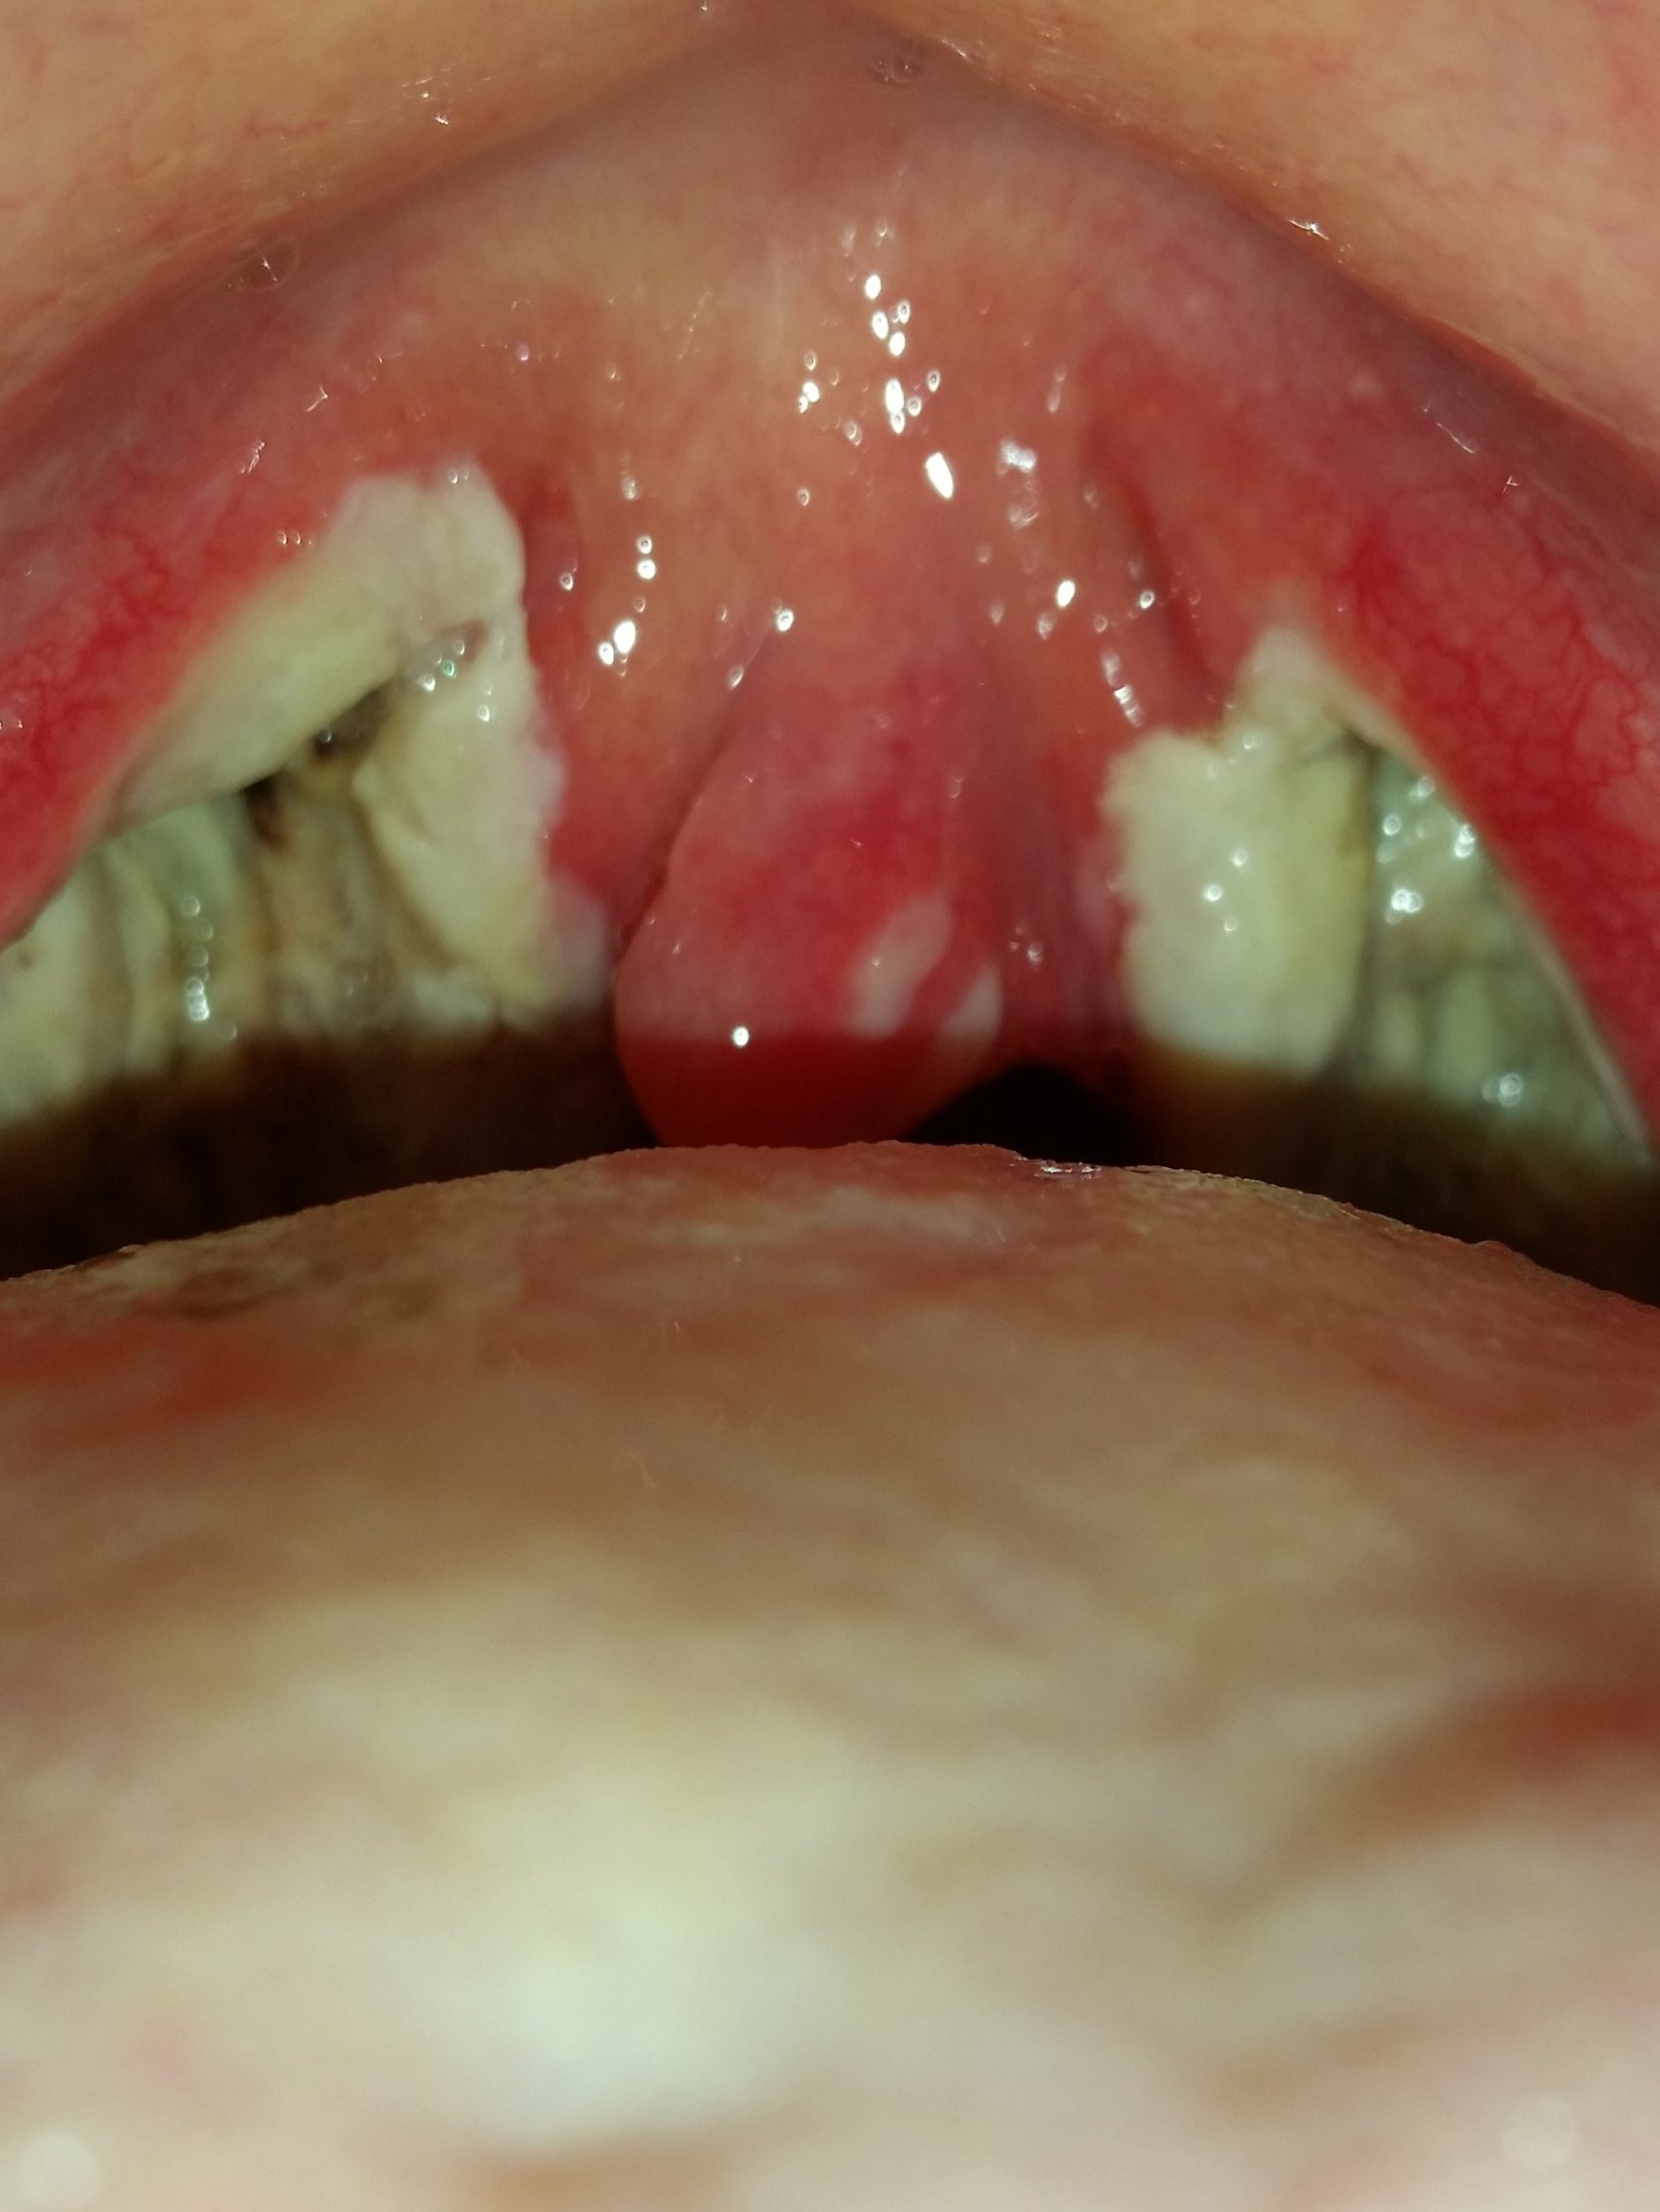 Mandel OP: Meine Tonsillektomie und die Nachwirkungen in 13 Tagen - YouTube